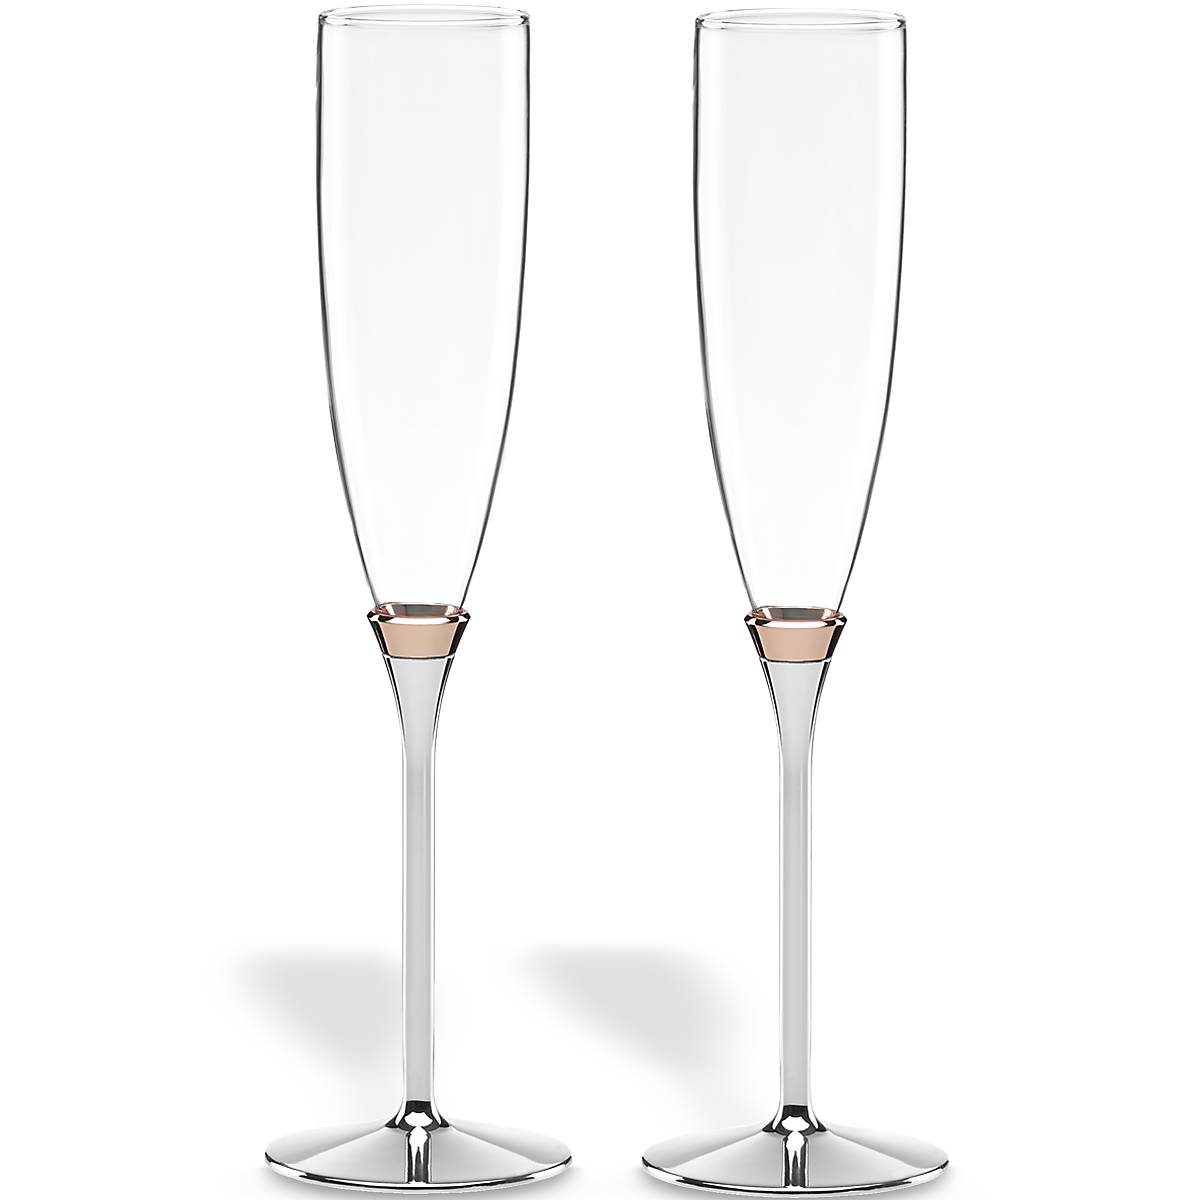 Бокалы для шампанского 2 шт. Набор фужеров для шампанского Элеганс  2шт 170мл q9530. Swarovski бокалы для шампанского Crystalline.